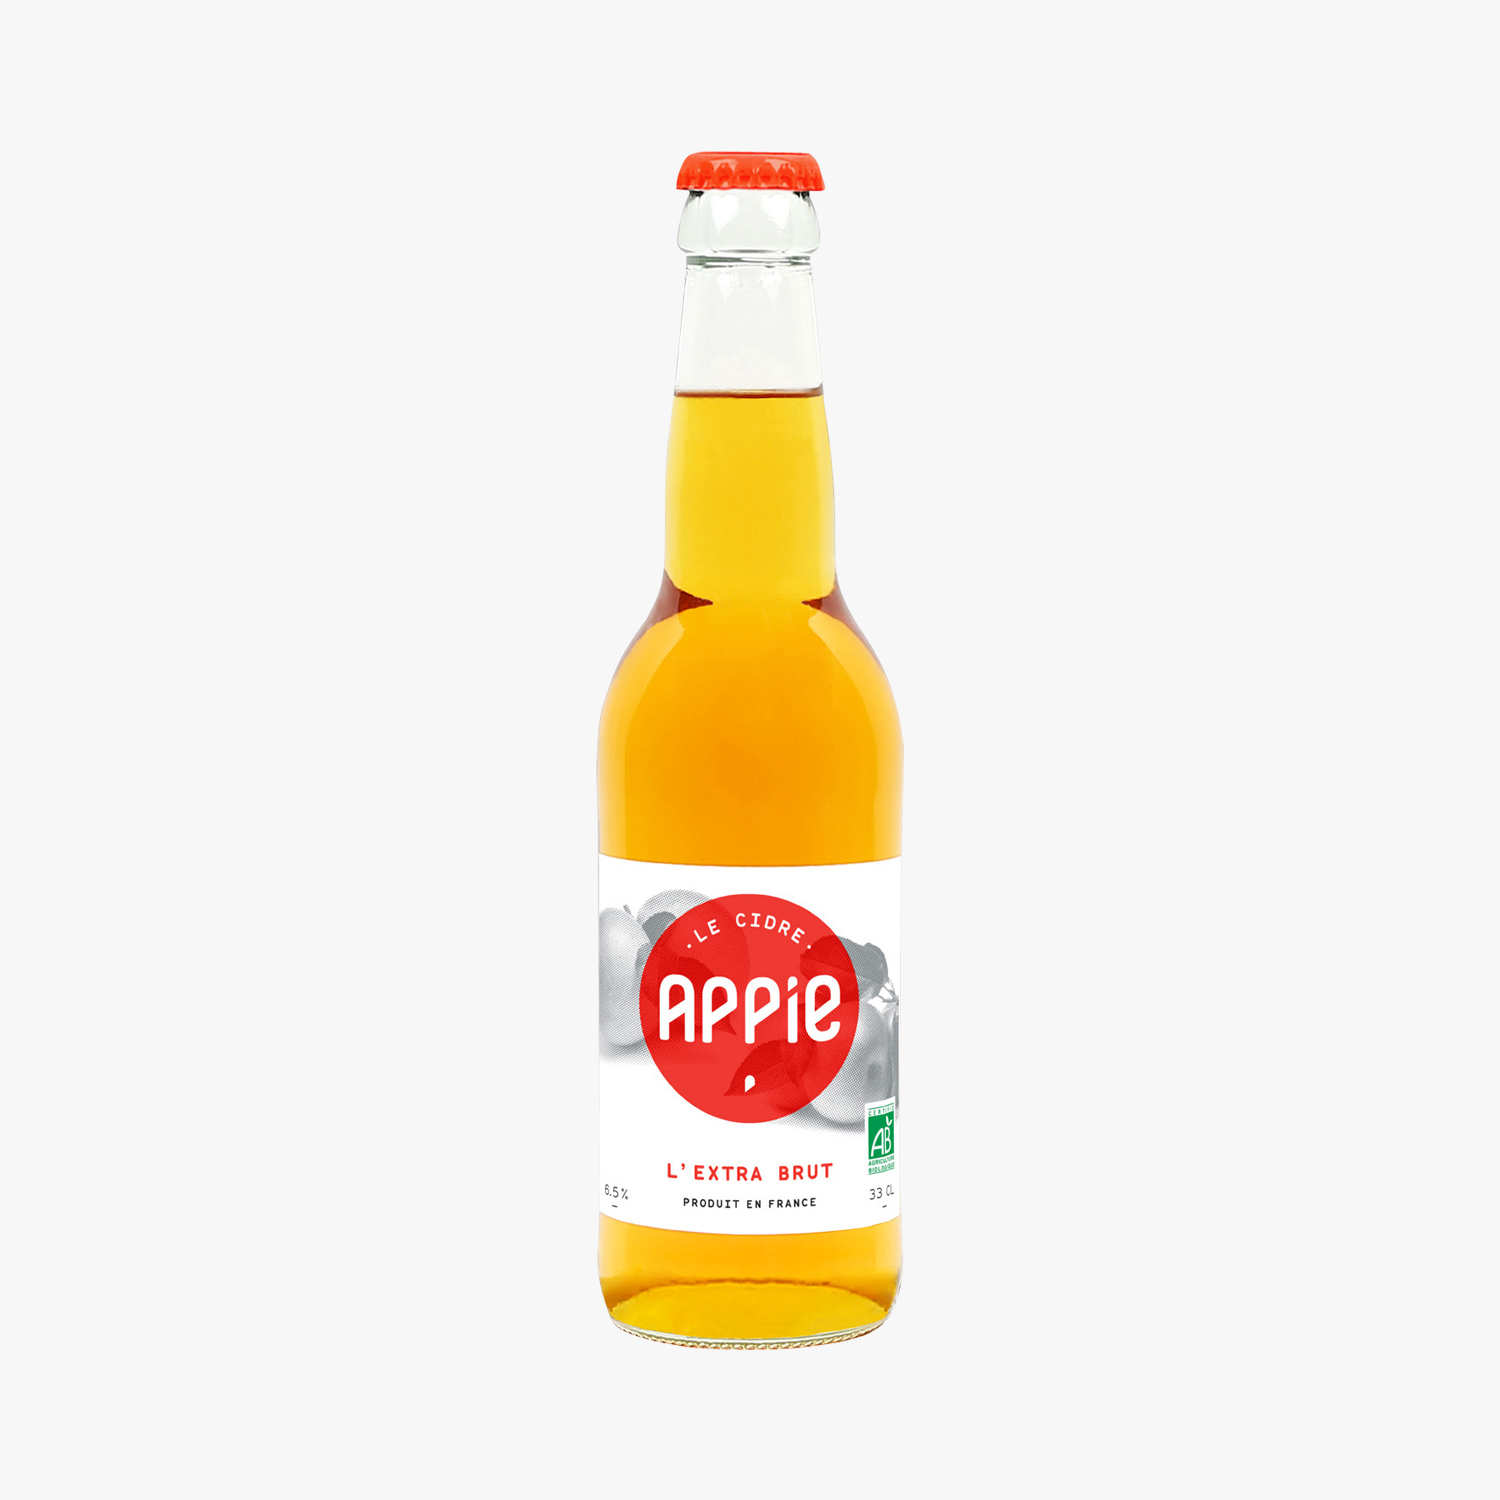 Appie le cidre « L’EXTRA BRUT » /Appie  « L’EXTRA BRUT » 水果酒/6.5% 33cl